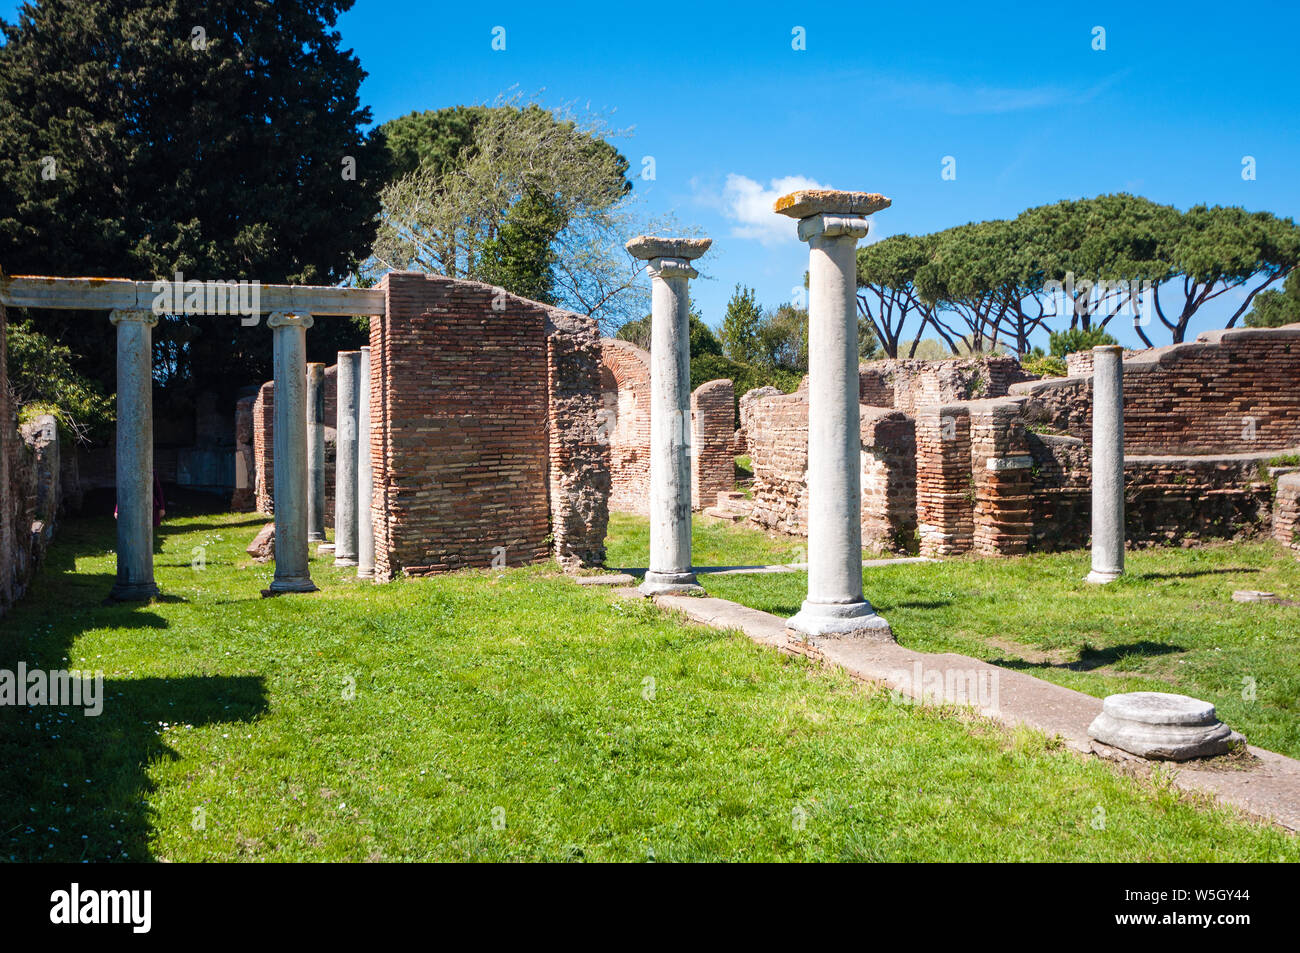 Basilica Cristiana, Ostia Antica archaeological site, Ostia, Rome province, Lazio, Italy, Europe Stock Photo